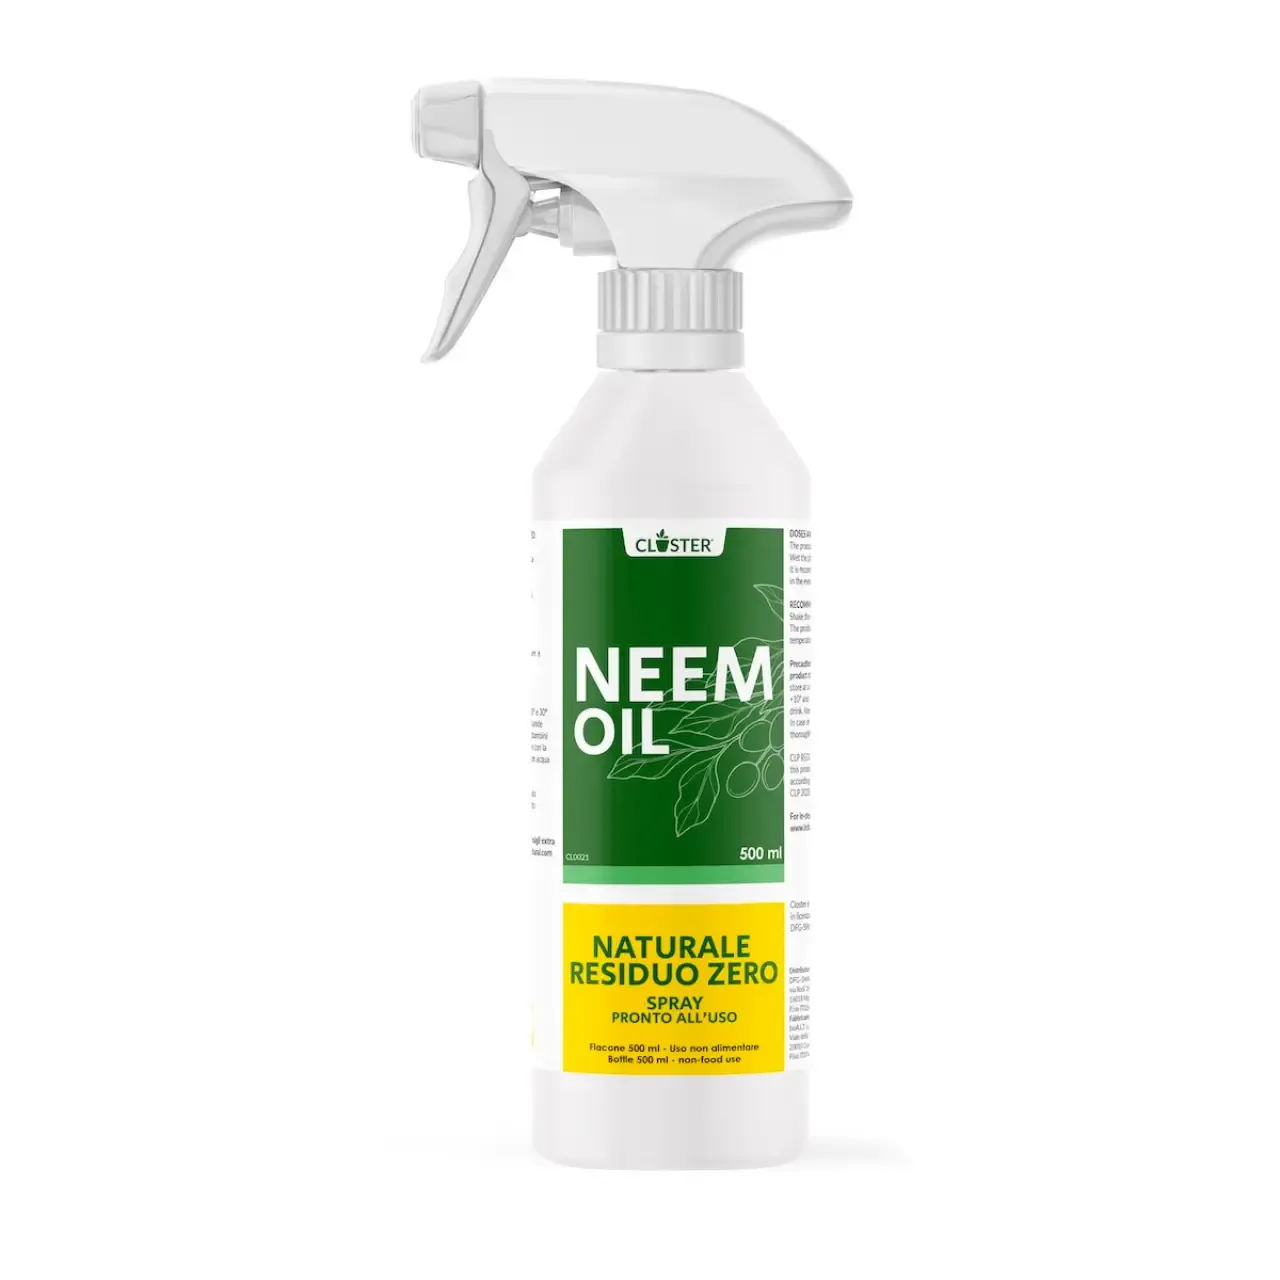 Olio di Neem per Piante Spray